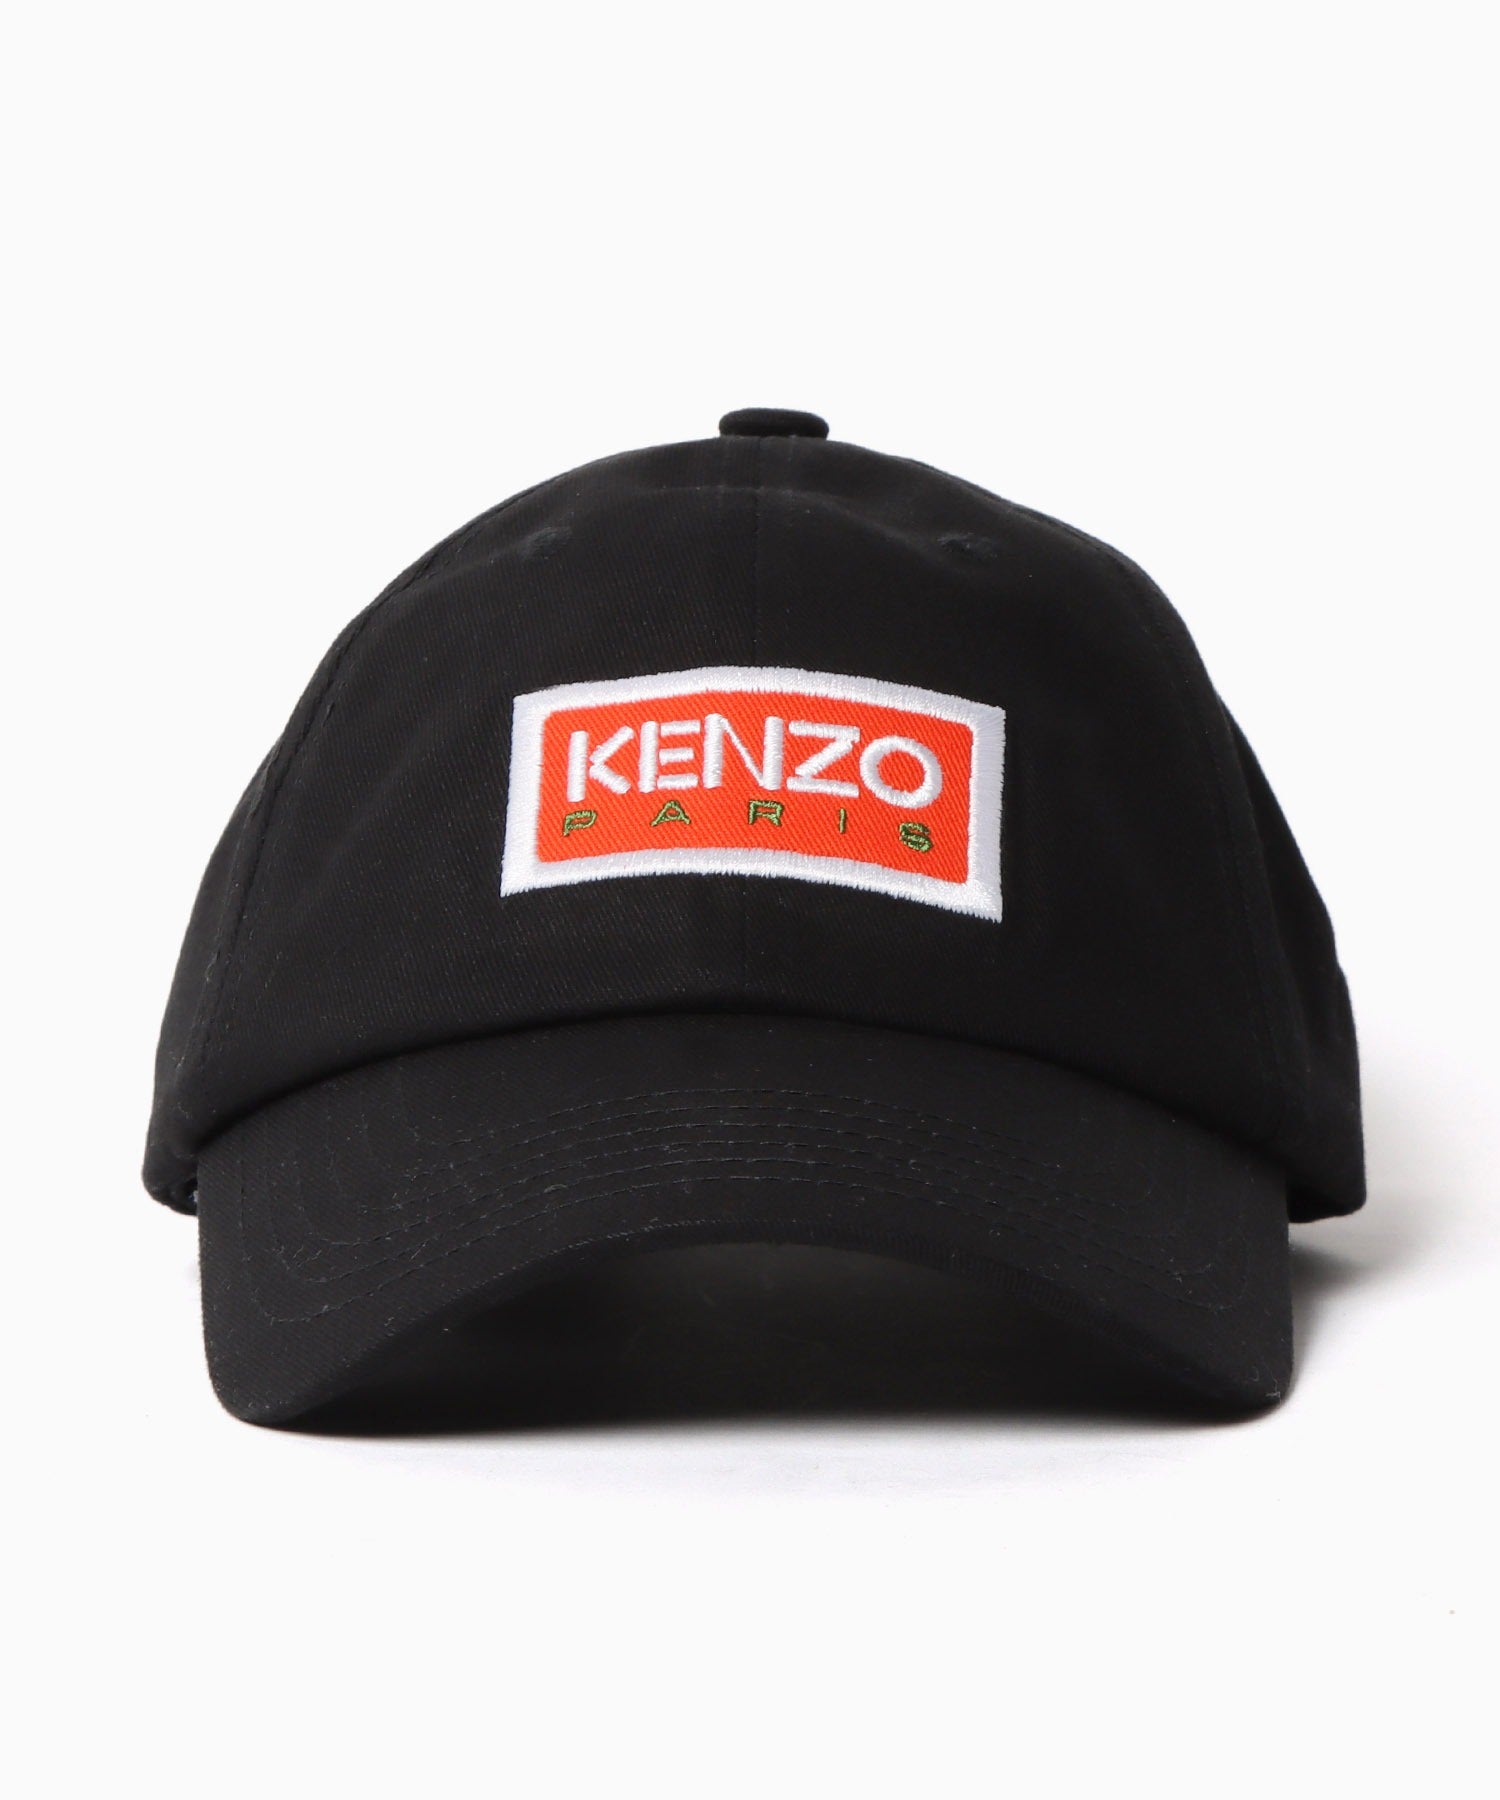 KENZO/ケンゾー CAP